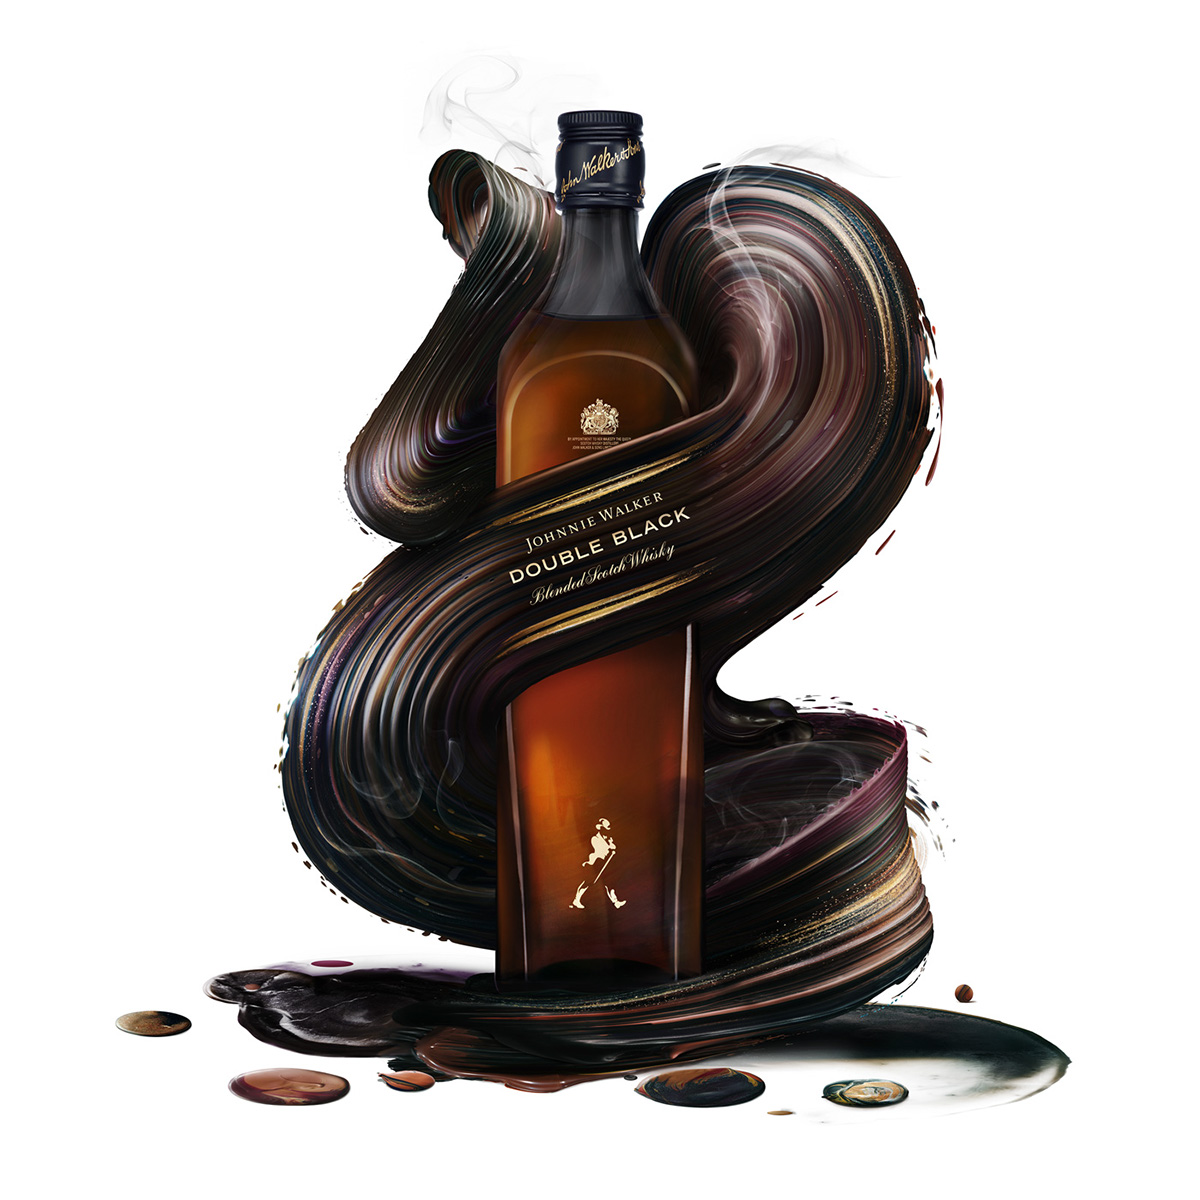 限量版威士忌包装设计9.jpg